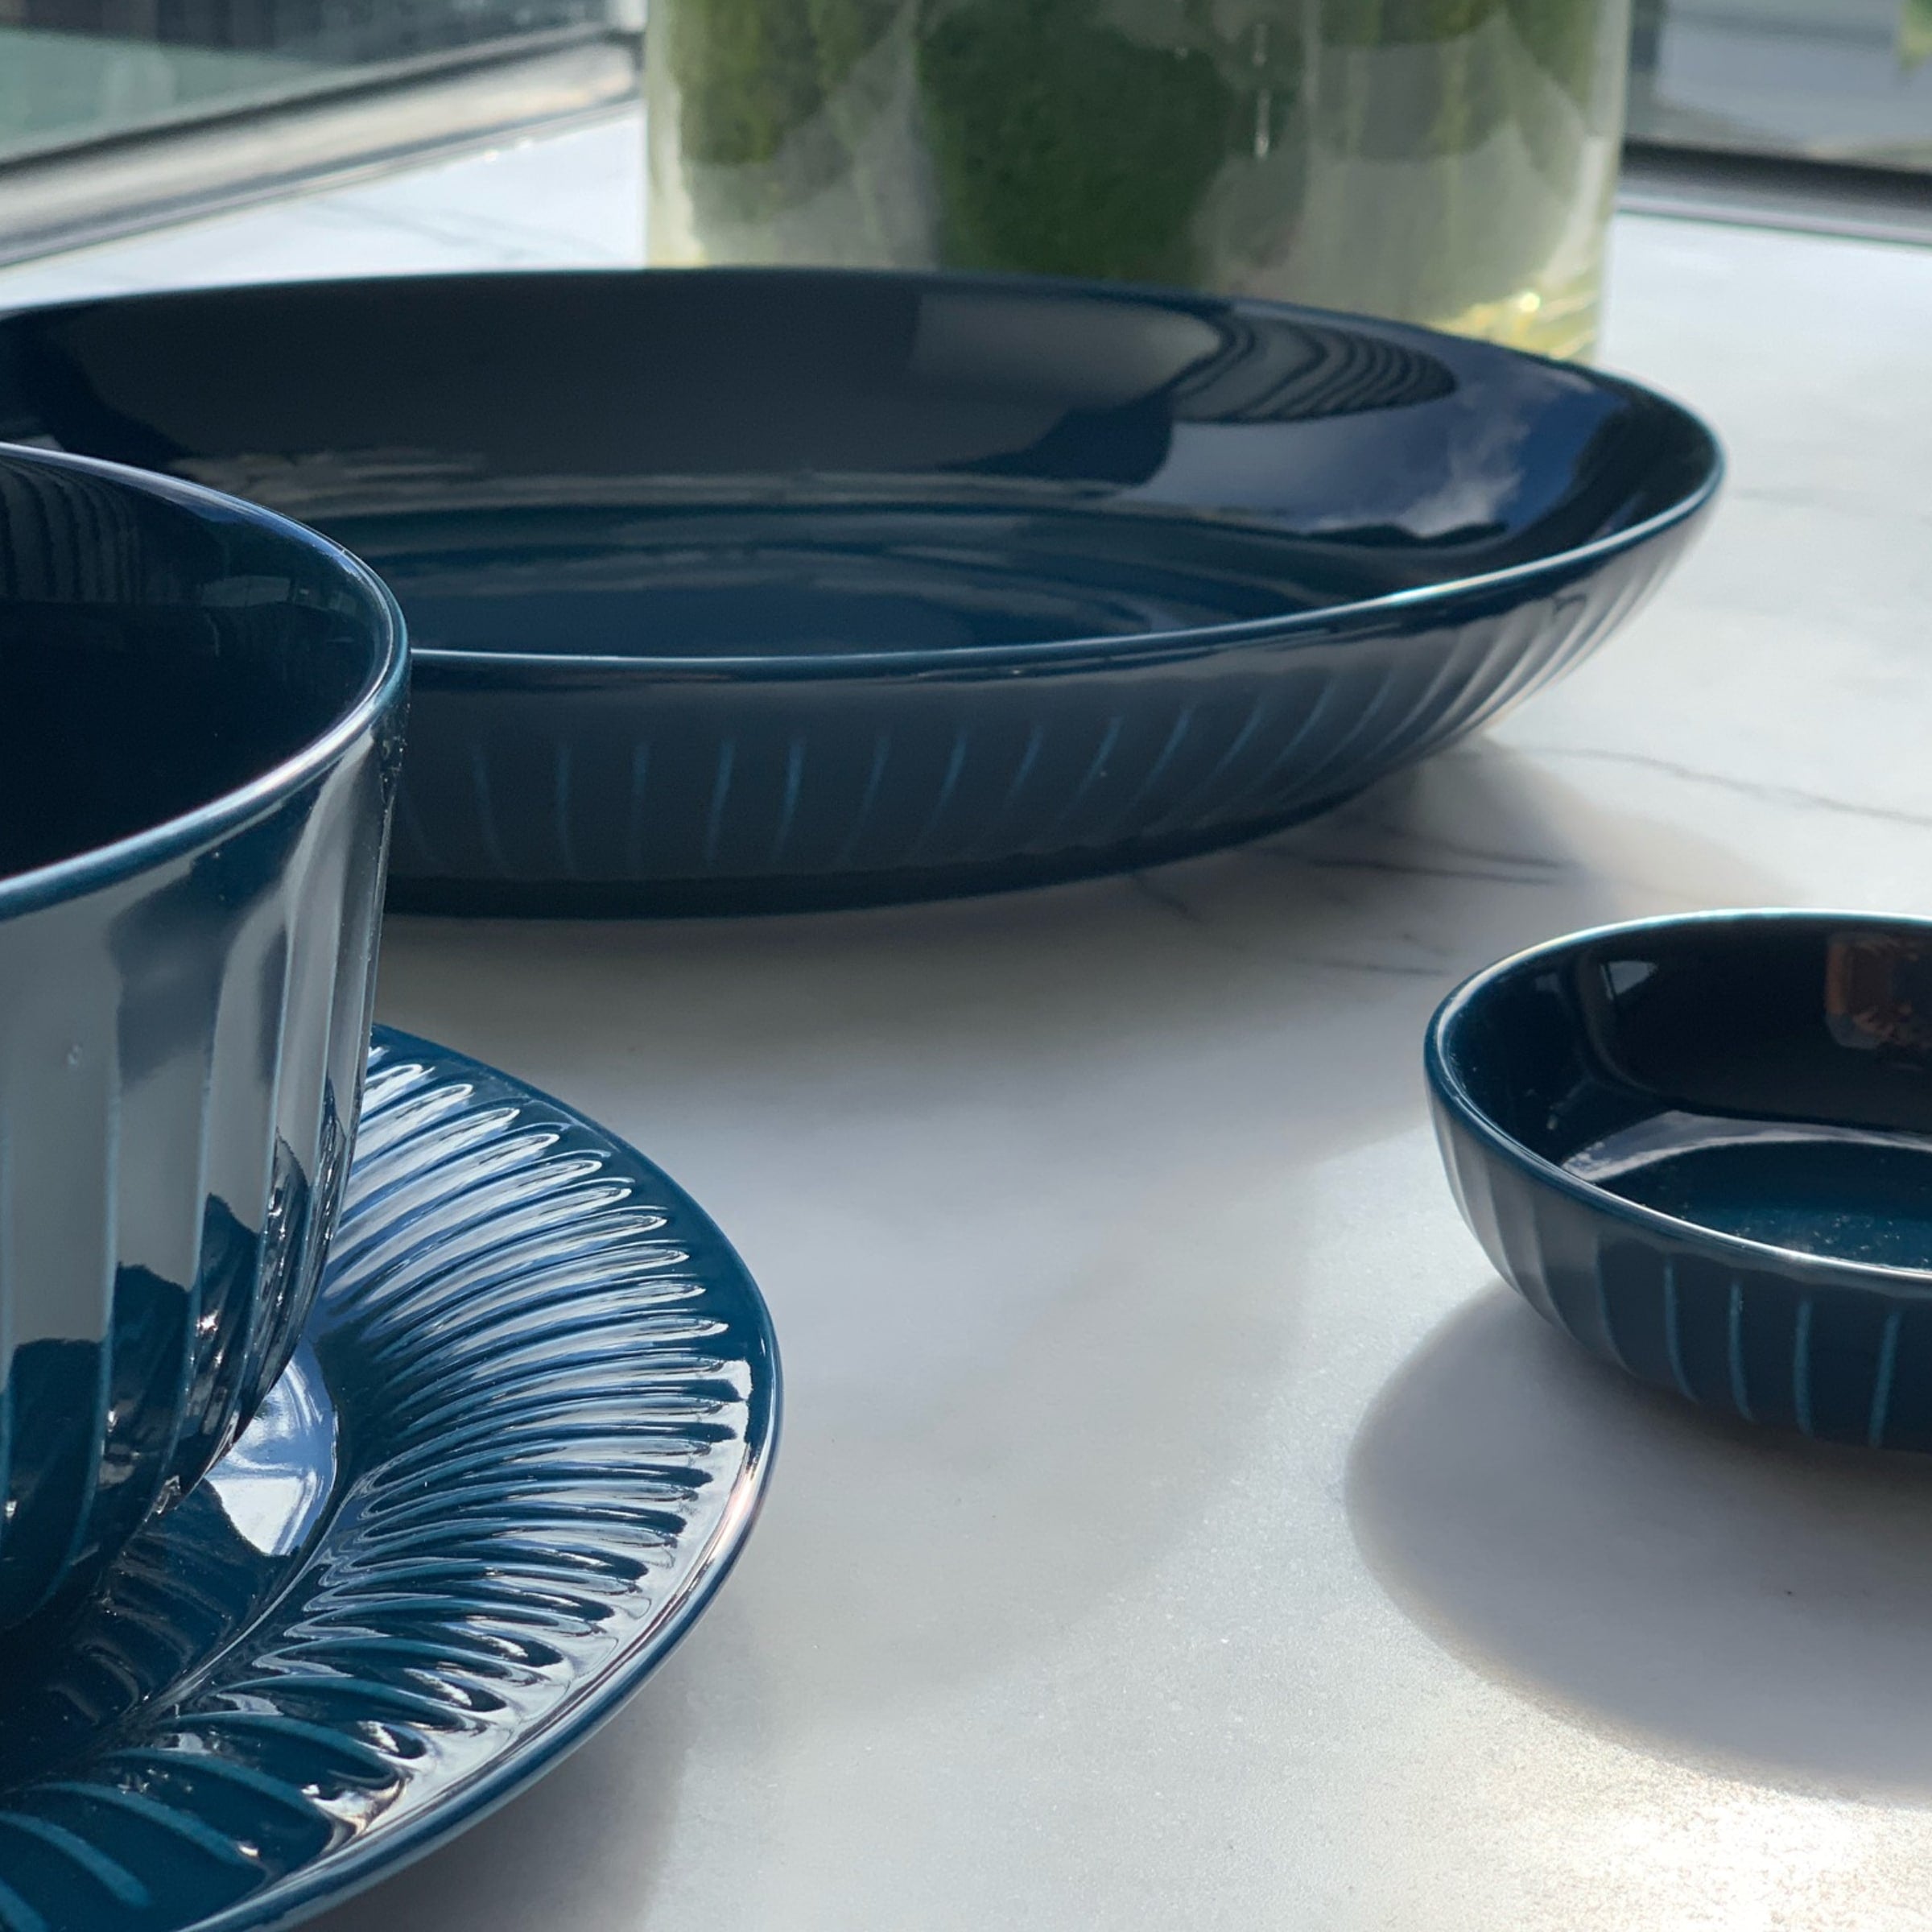 Sanda Serving Bowl - Blue - Buy Bowls Online at FRANKY'S